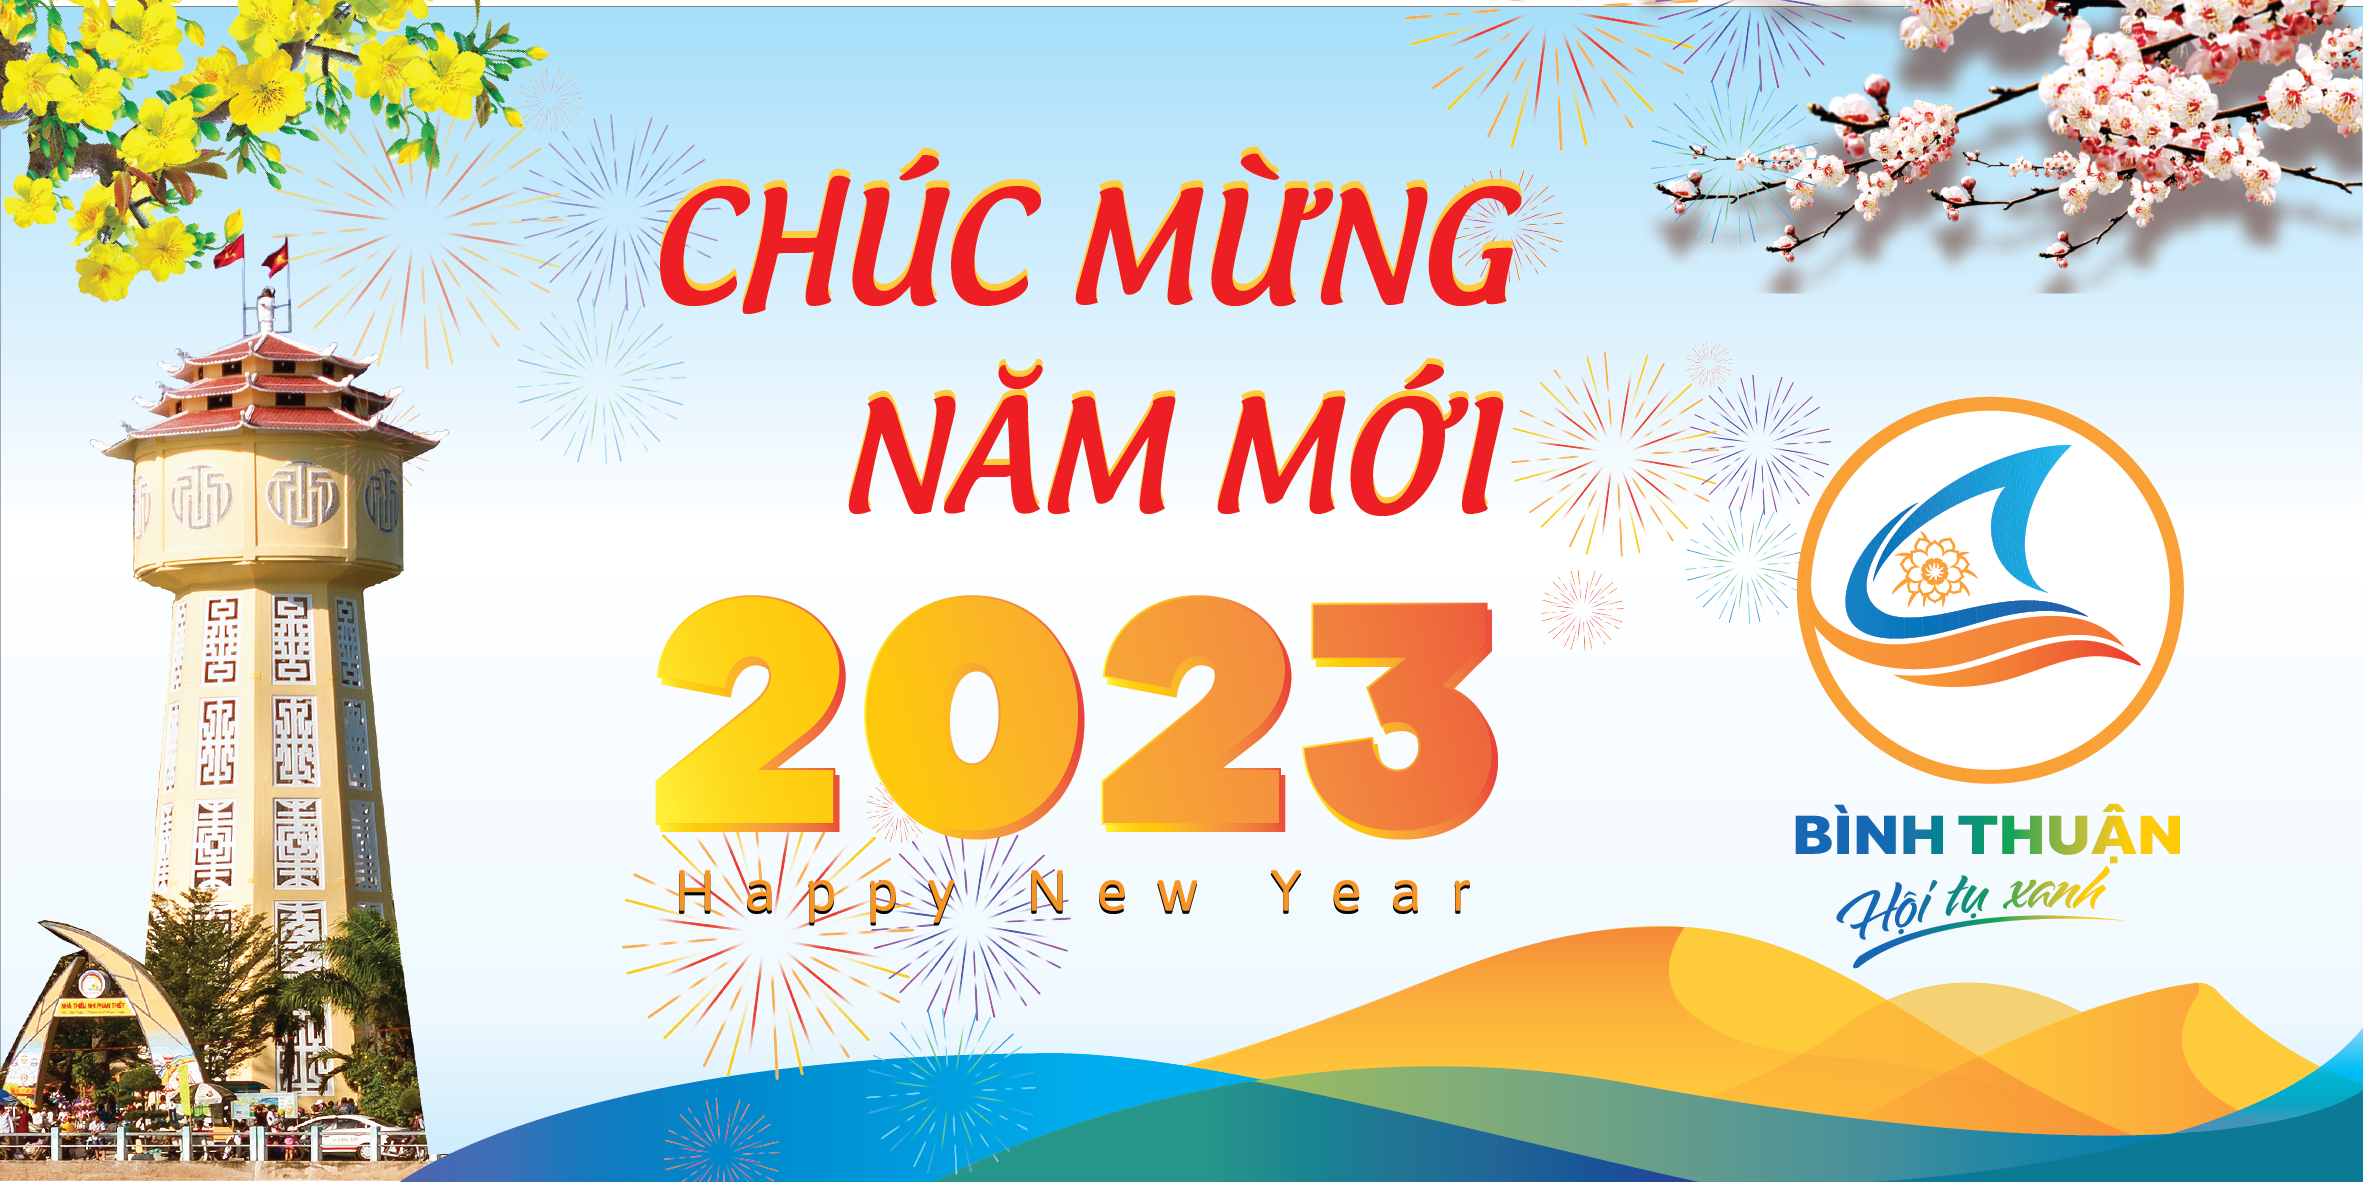 Chúc mừng năm mới 2021